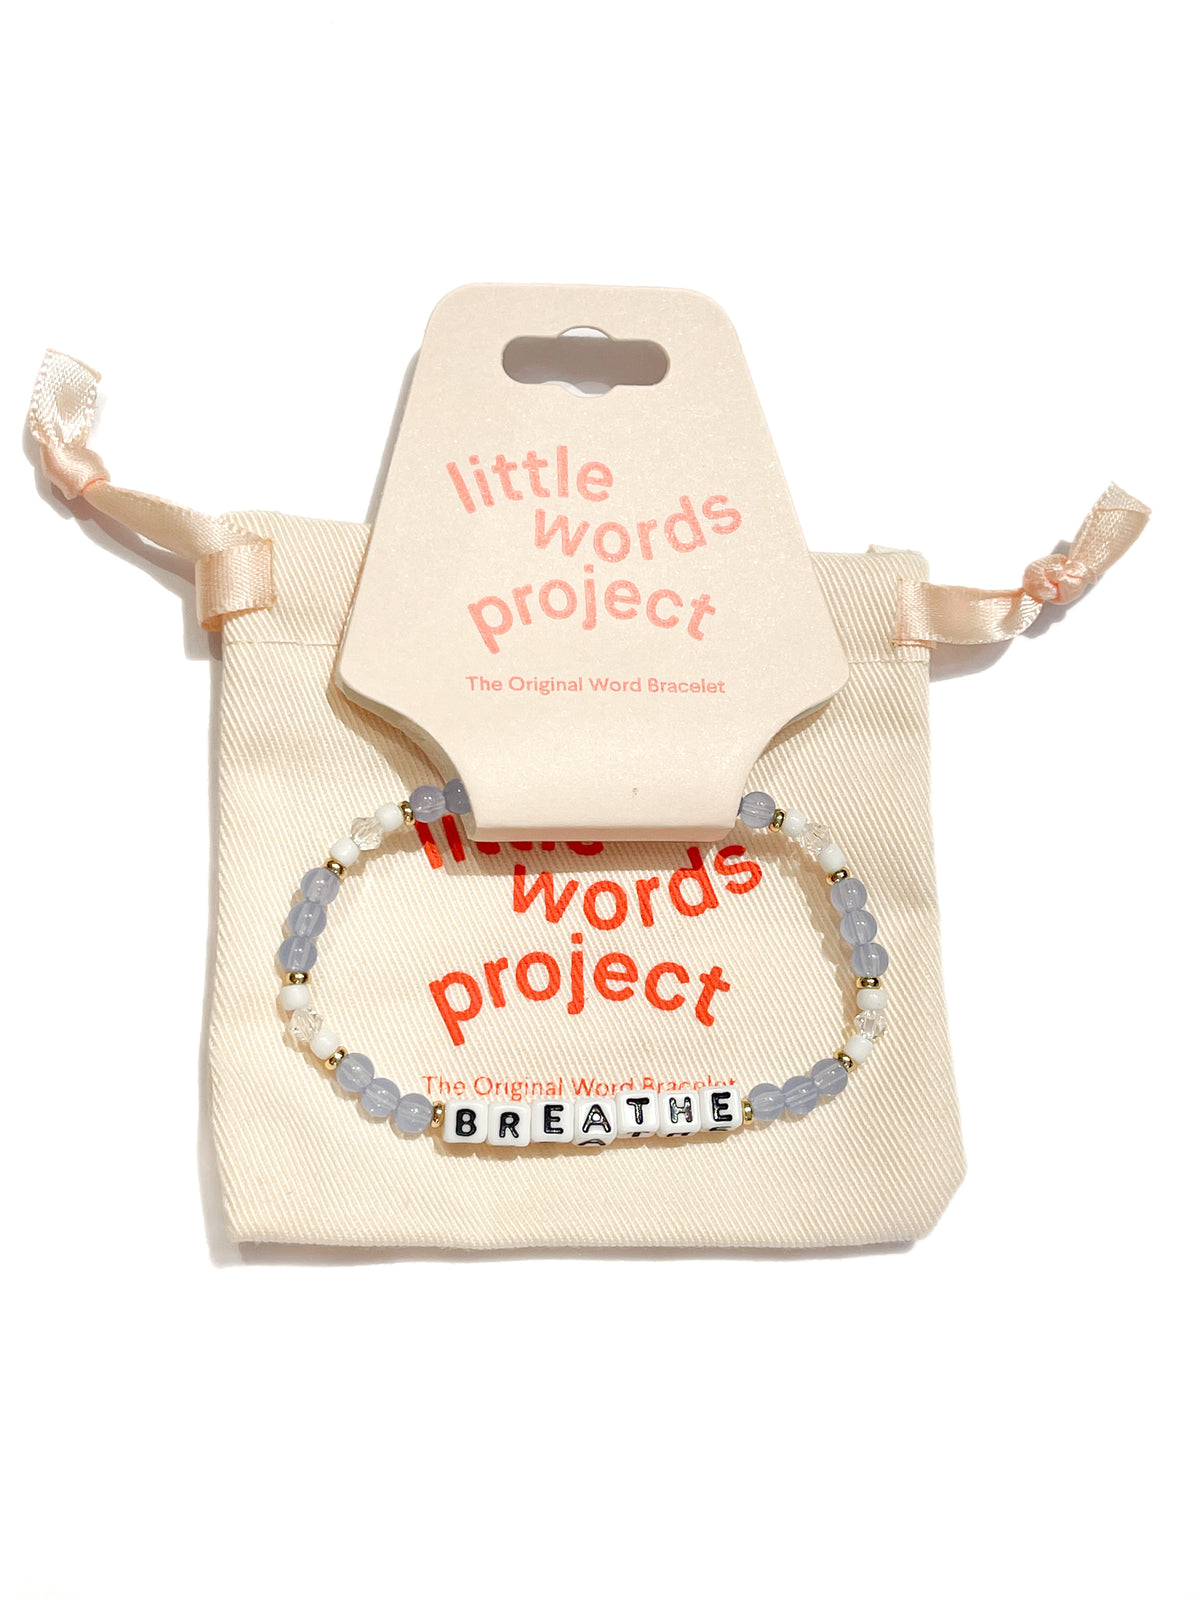 Little Words Project Bracelet - Breathe